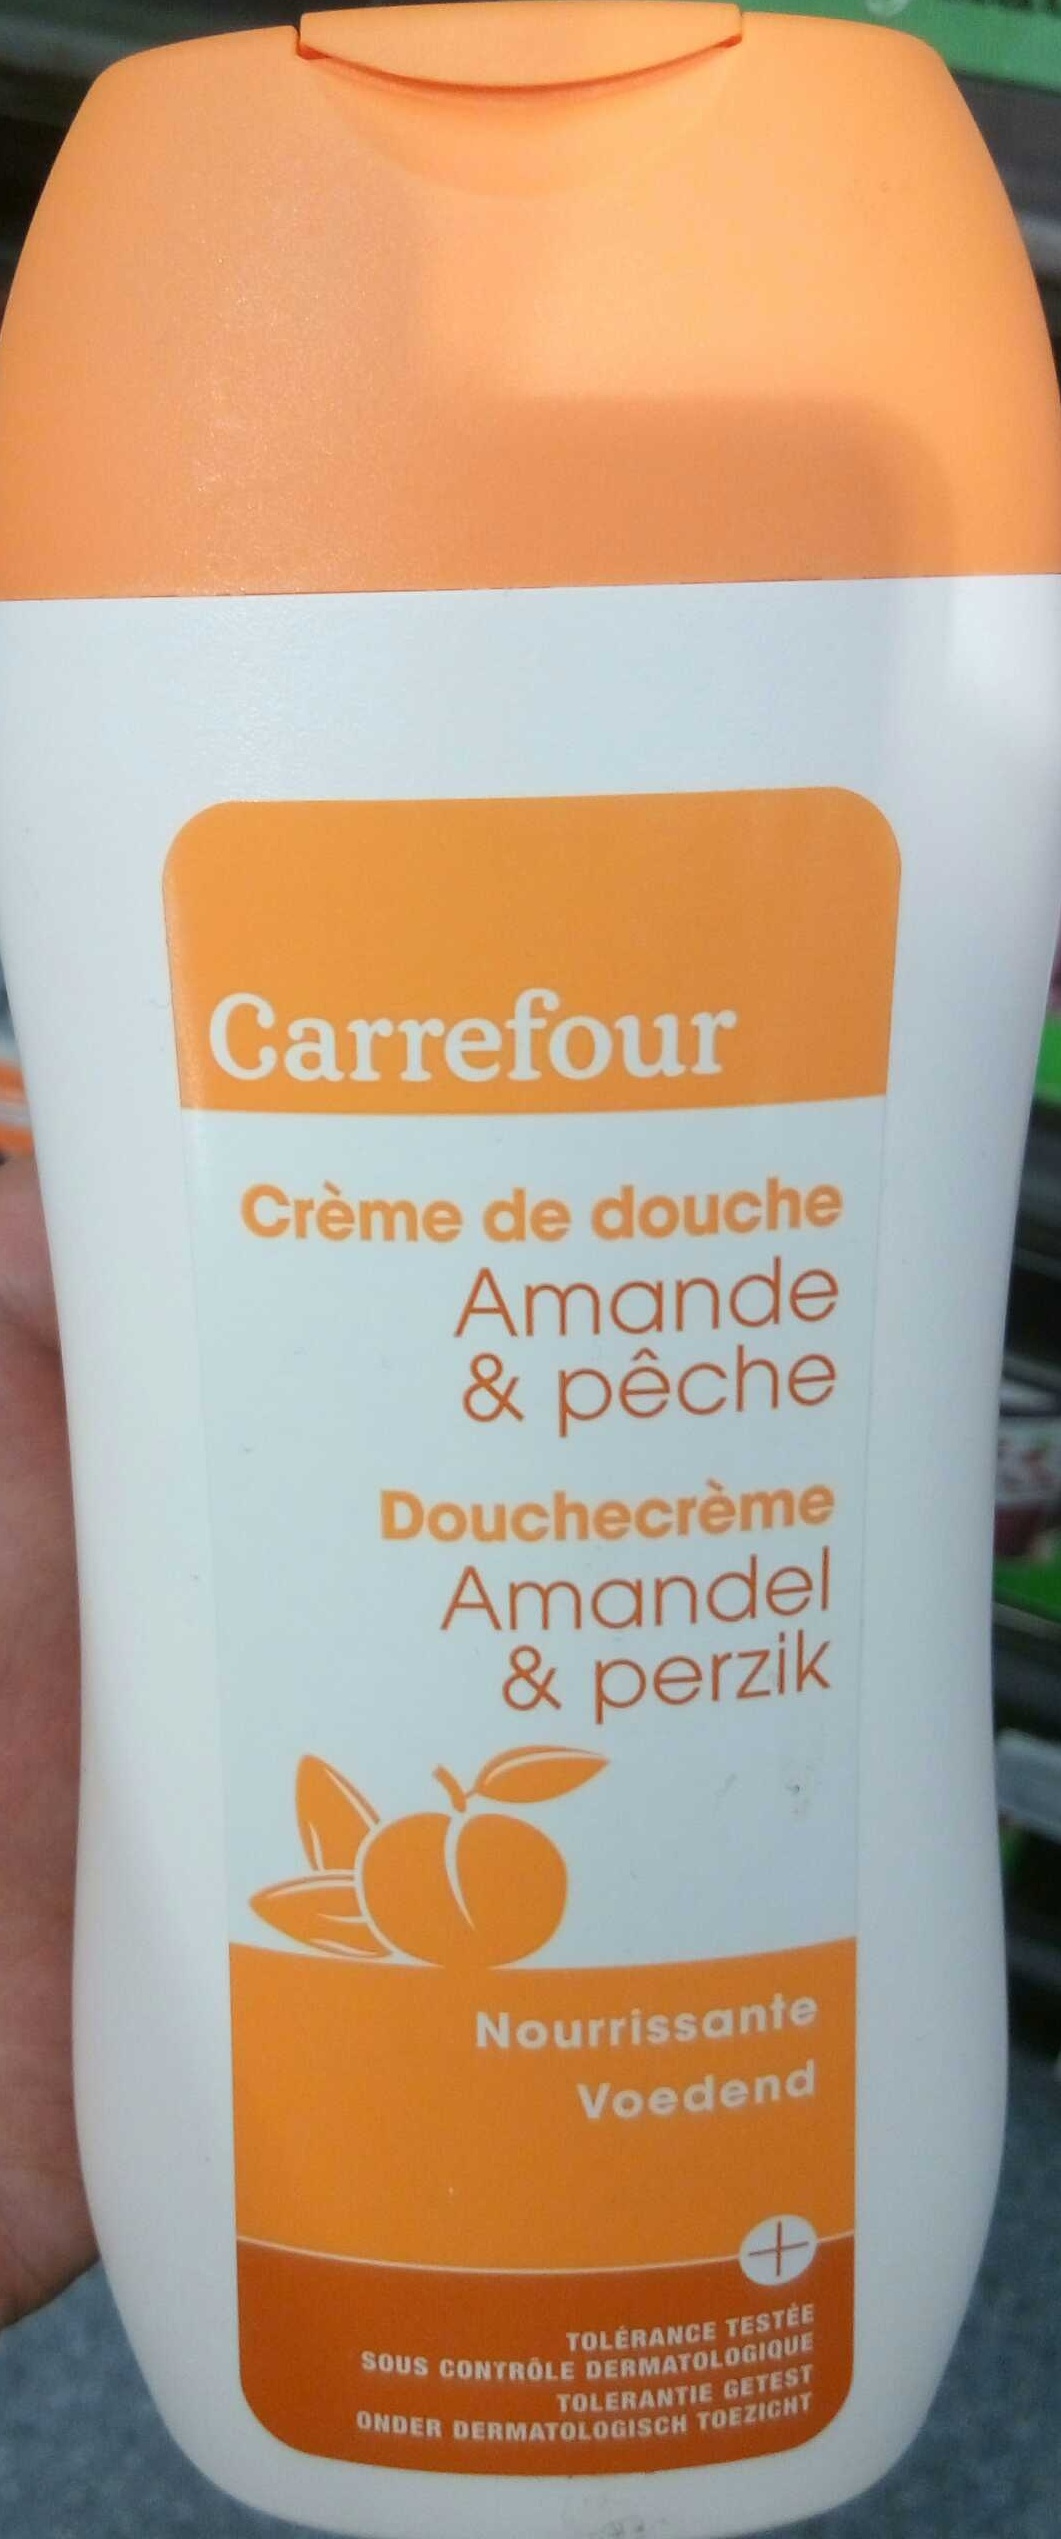 Crème de douche Amande & pêche nourrissante - Produit - fr